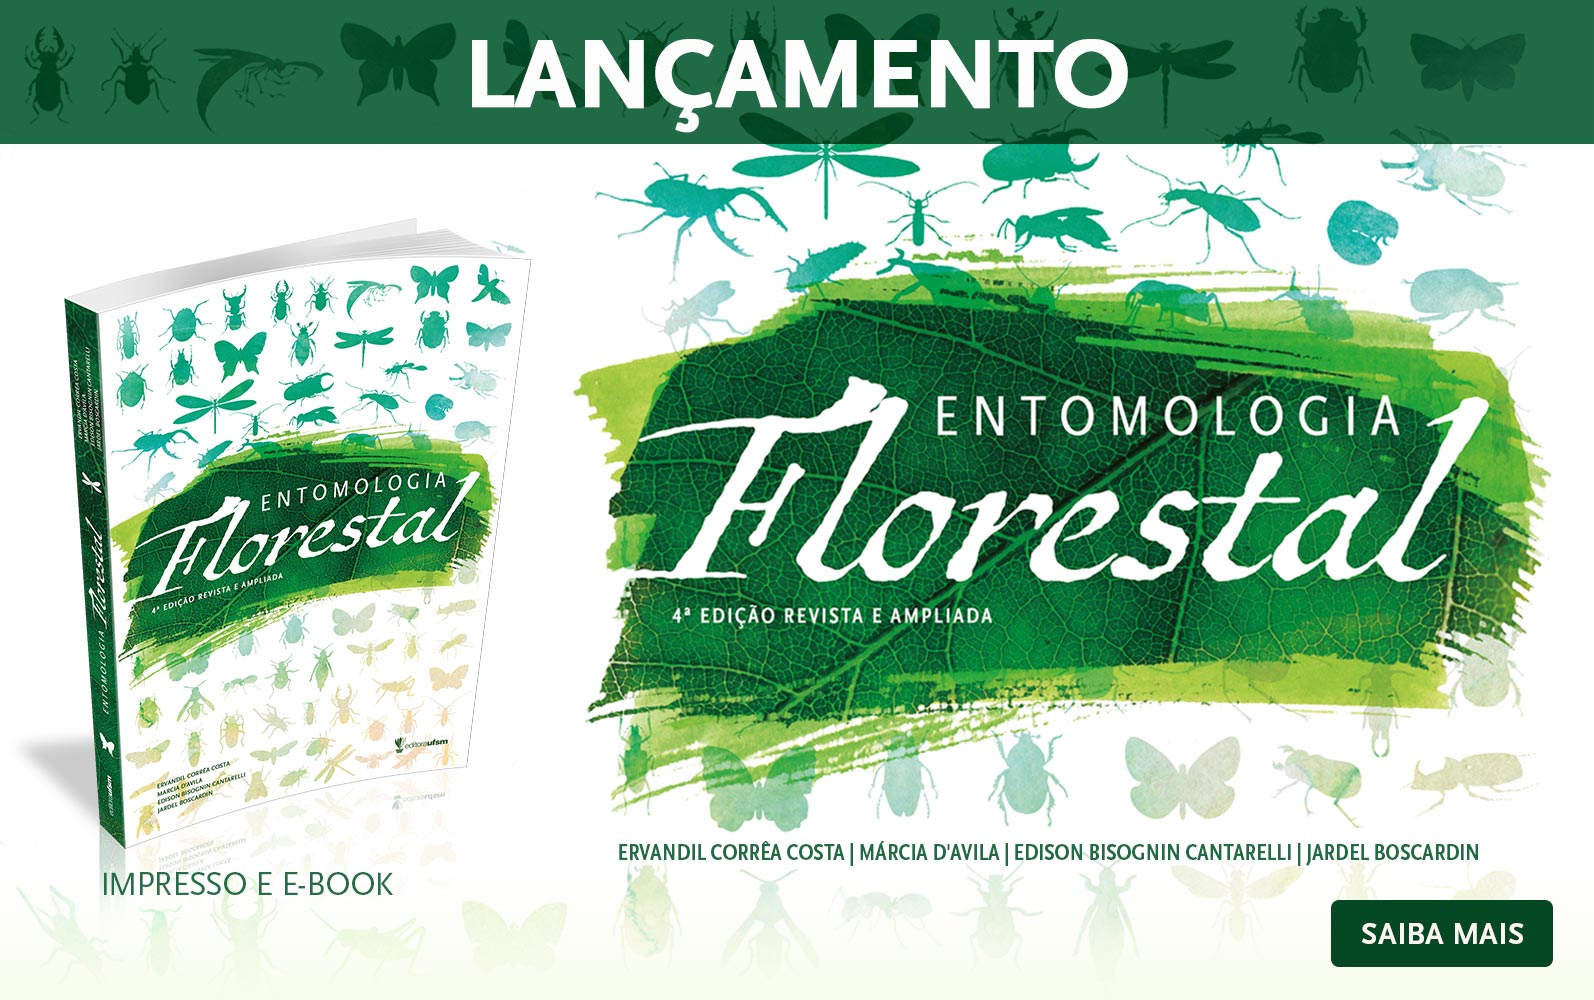 Acesse o livro Entomologia Florestal - 4ª edição